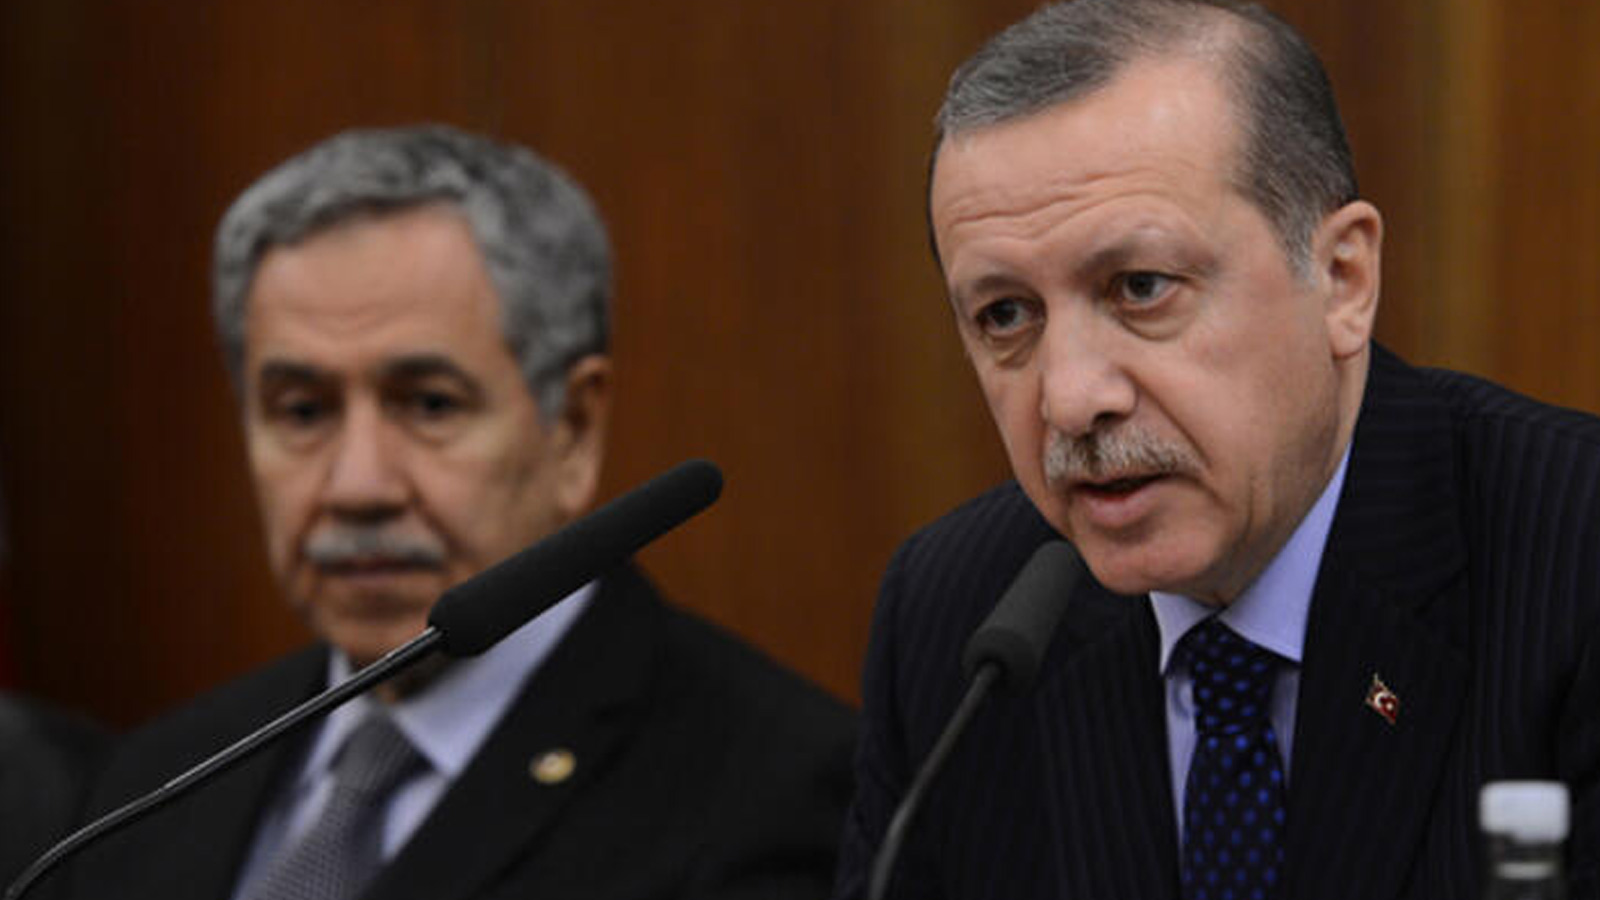 “Arınç ve Erdoğan arasında ‘Ahmet Türk’ tartışması; Erdoğan, 'Kayyumu eleştirenler büyük yanlış yapıyor’ dedi”